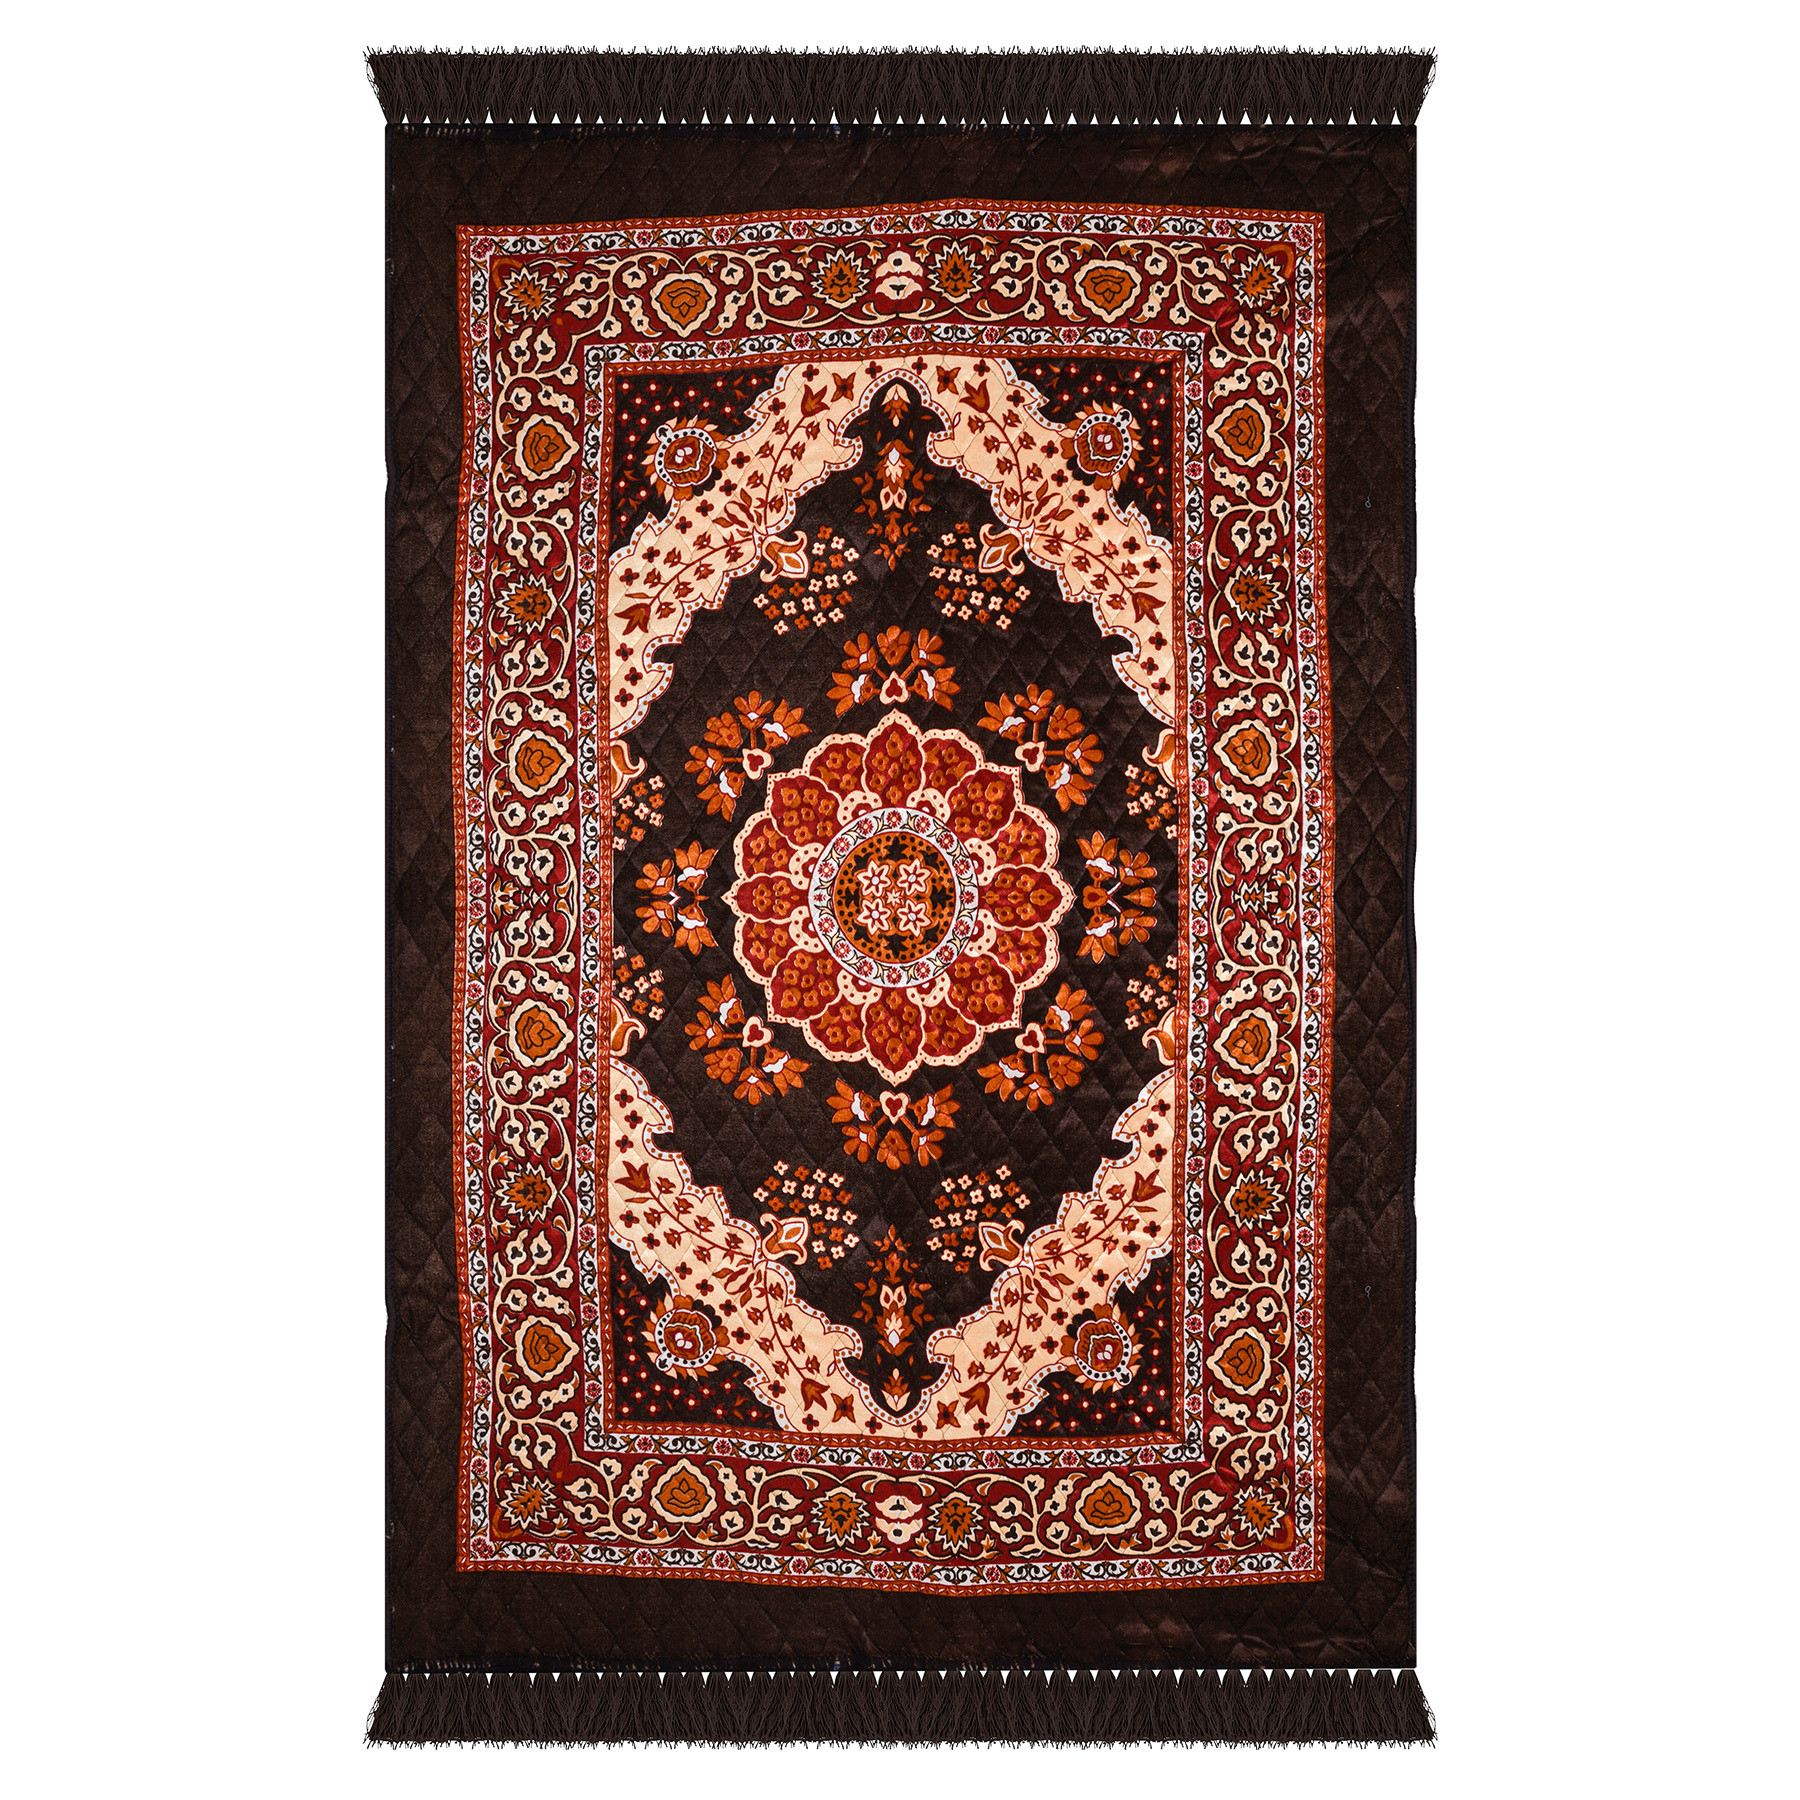 Kuber Industries Carpet | Velvet Carpet-Rug for Home Décor | Carpet Rug for Bedroom | Carpet for Living Room | Prayer-Yoga Mat | Carpet for Hall | 4x6 Ft | Brown